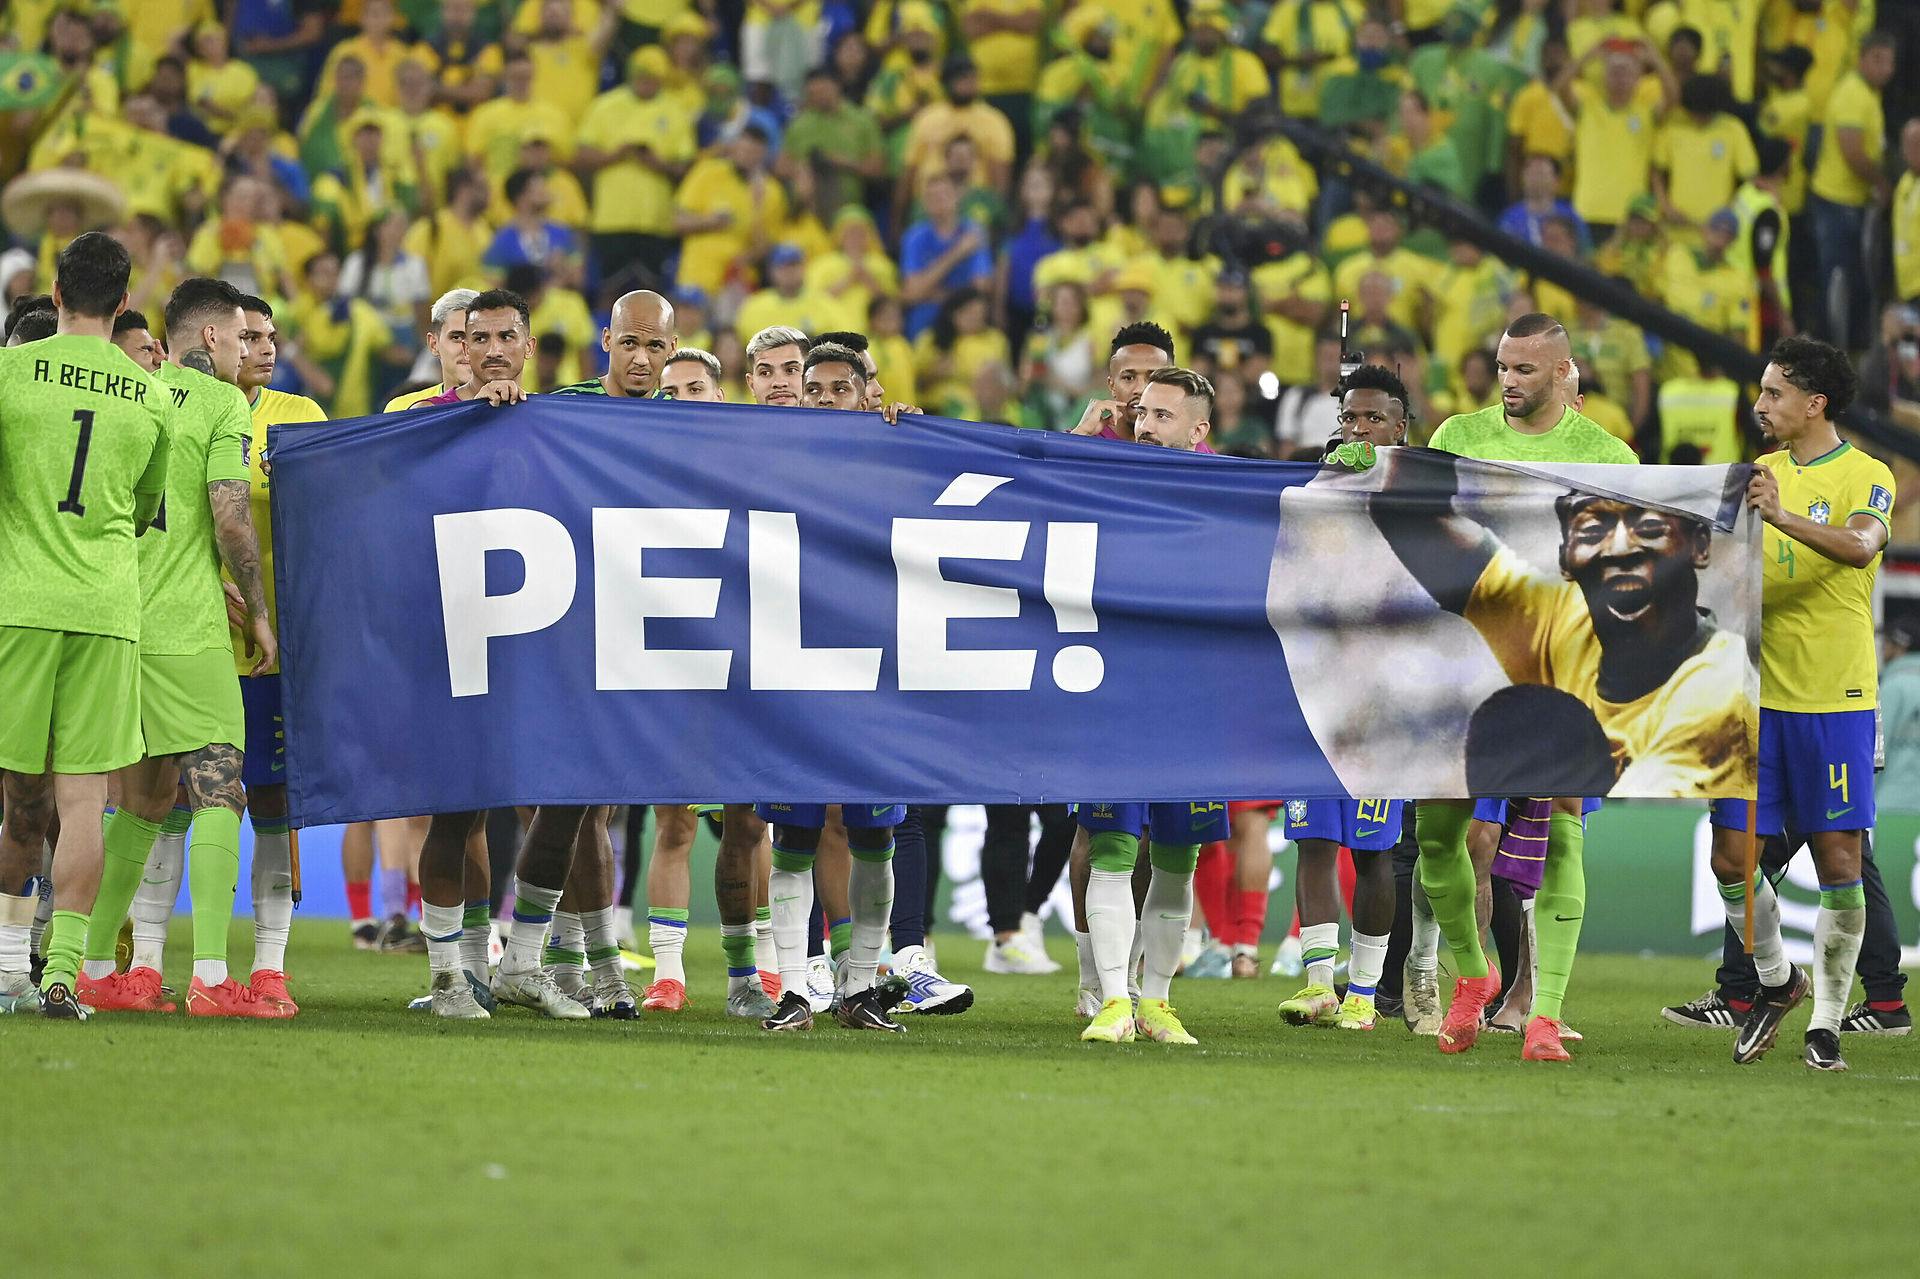 De brasilianske spillere samlet i en hyldest af Pelé.
